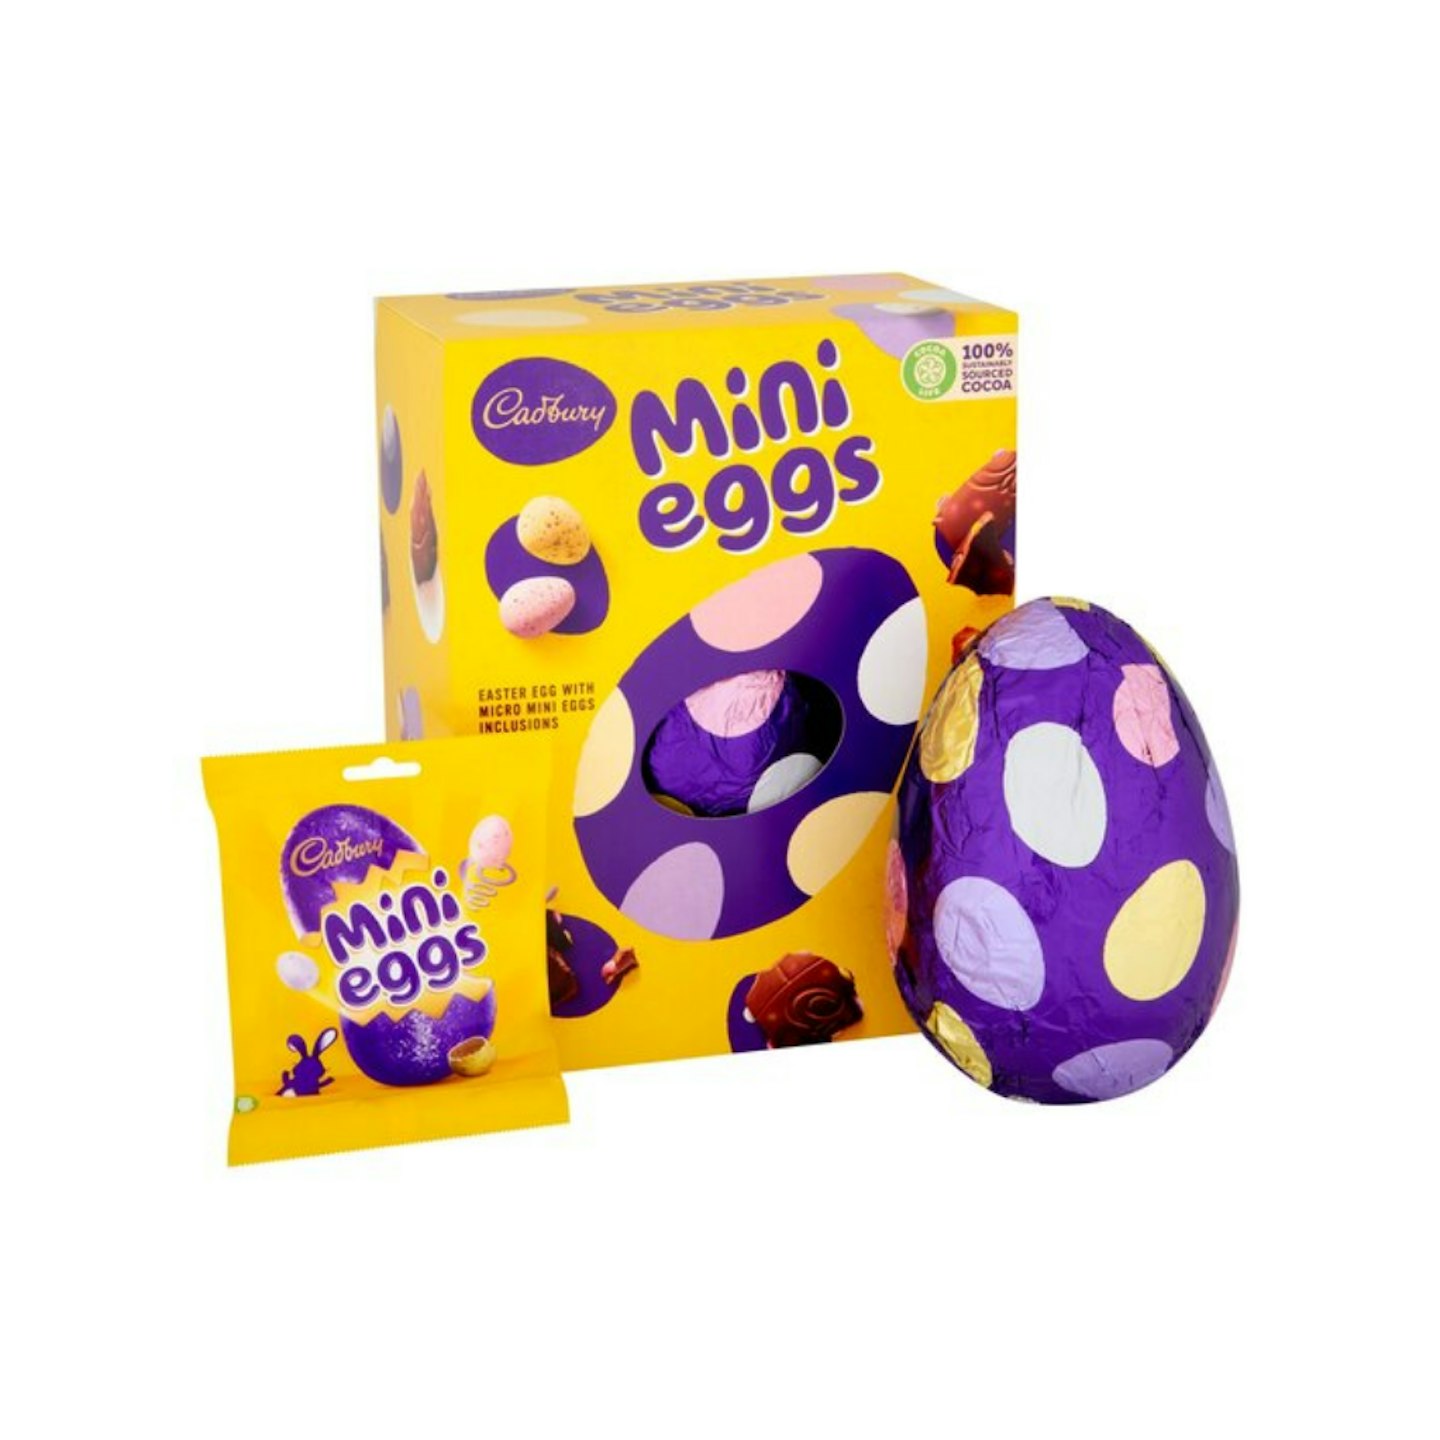 Best easter eggs 2021 uk